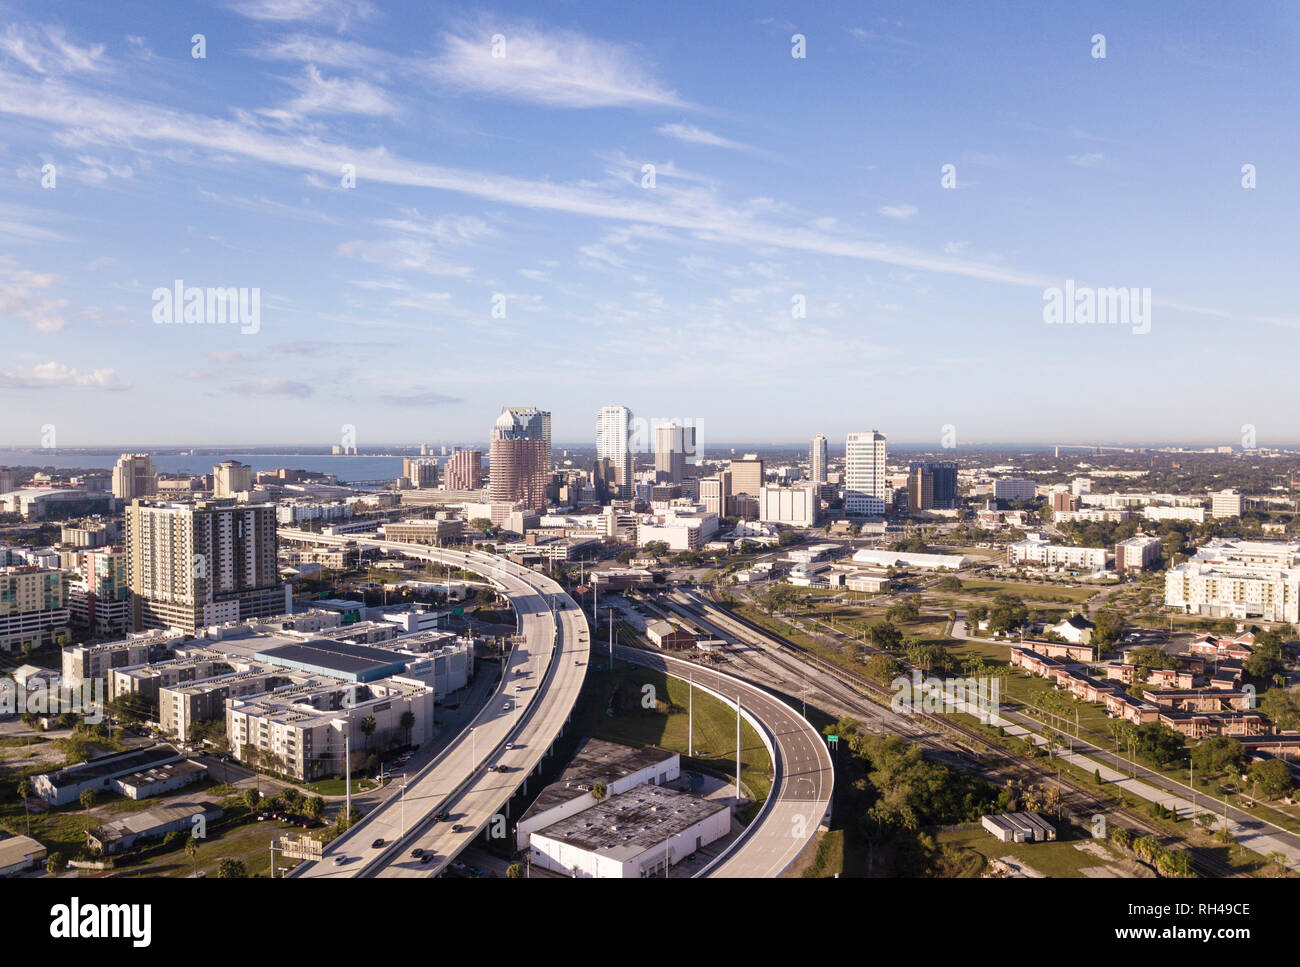 Luftbild der Innenstadt von Tampa, Florida und die umliegenden Autobahnen und industriellen Bereichen. Stockfoto